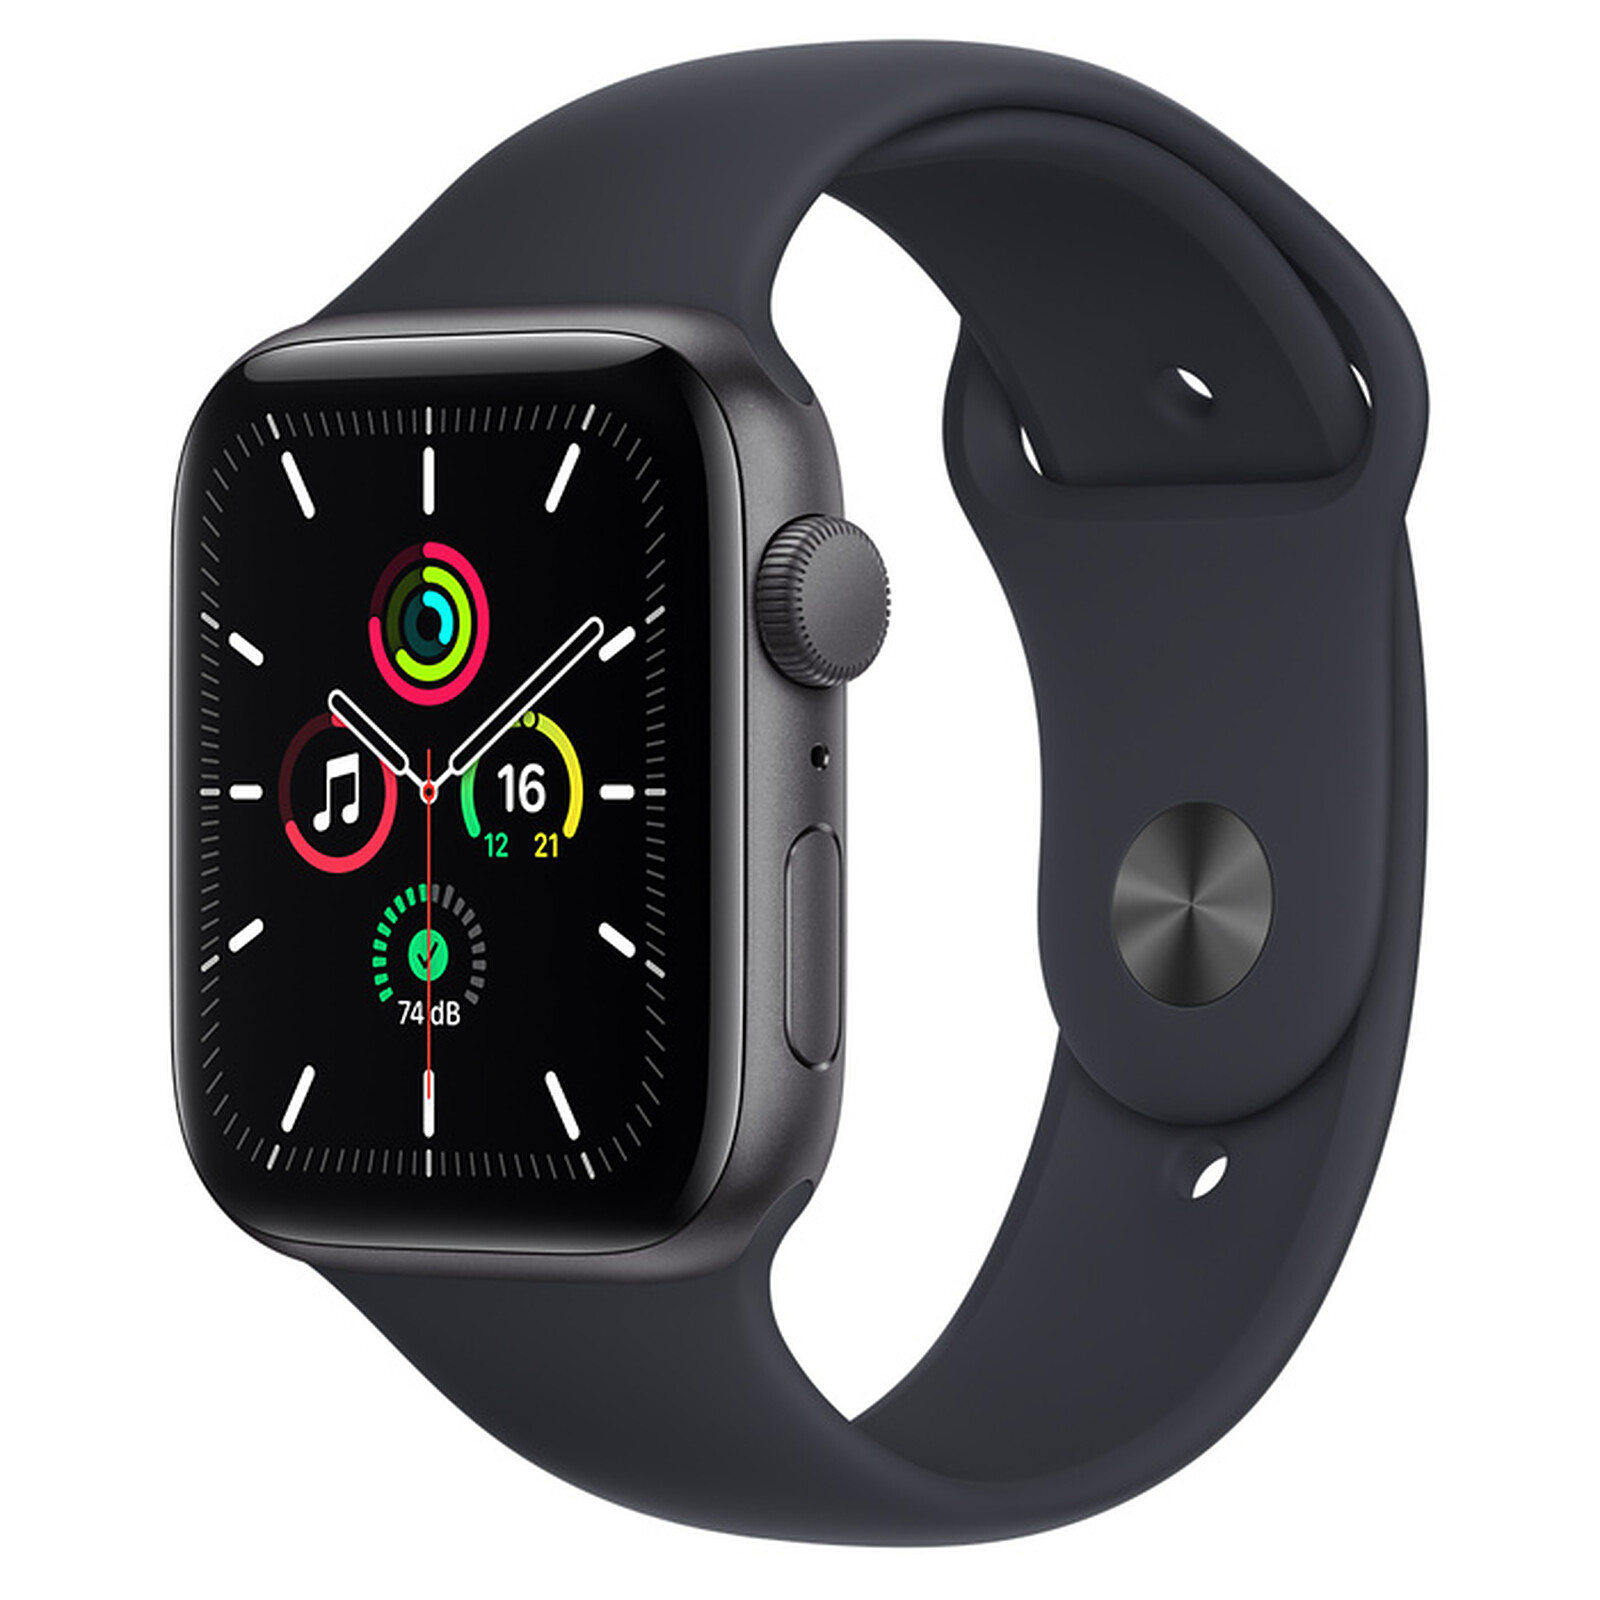 Quel est votre bracelet préféré d'Apple Watch pour faire du sport ?